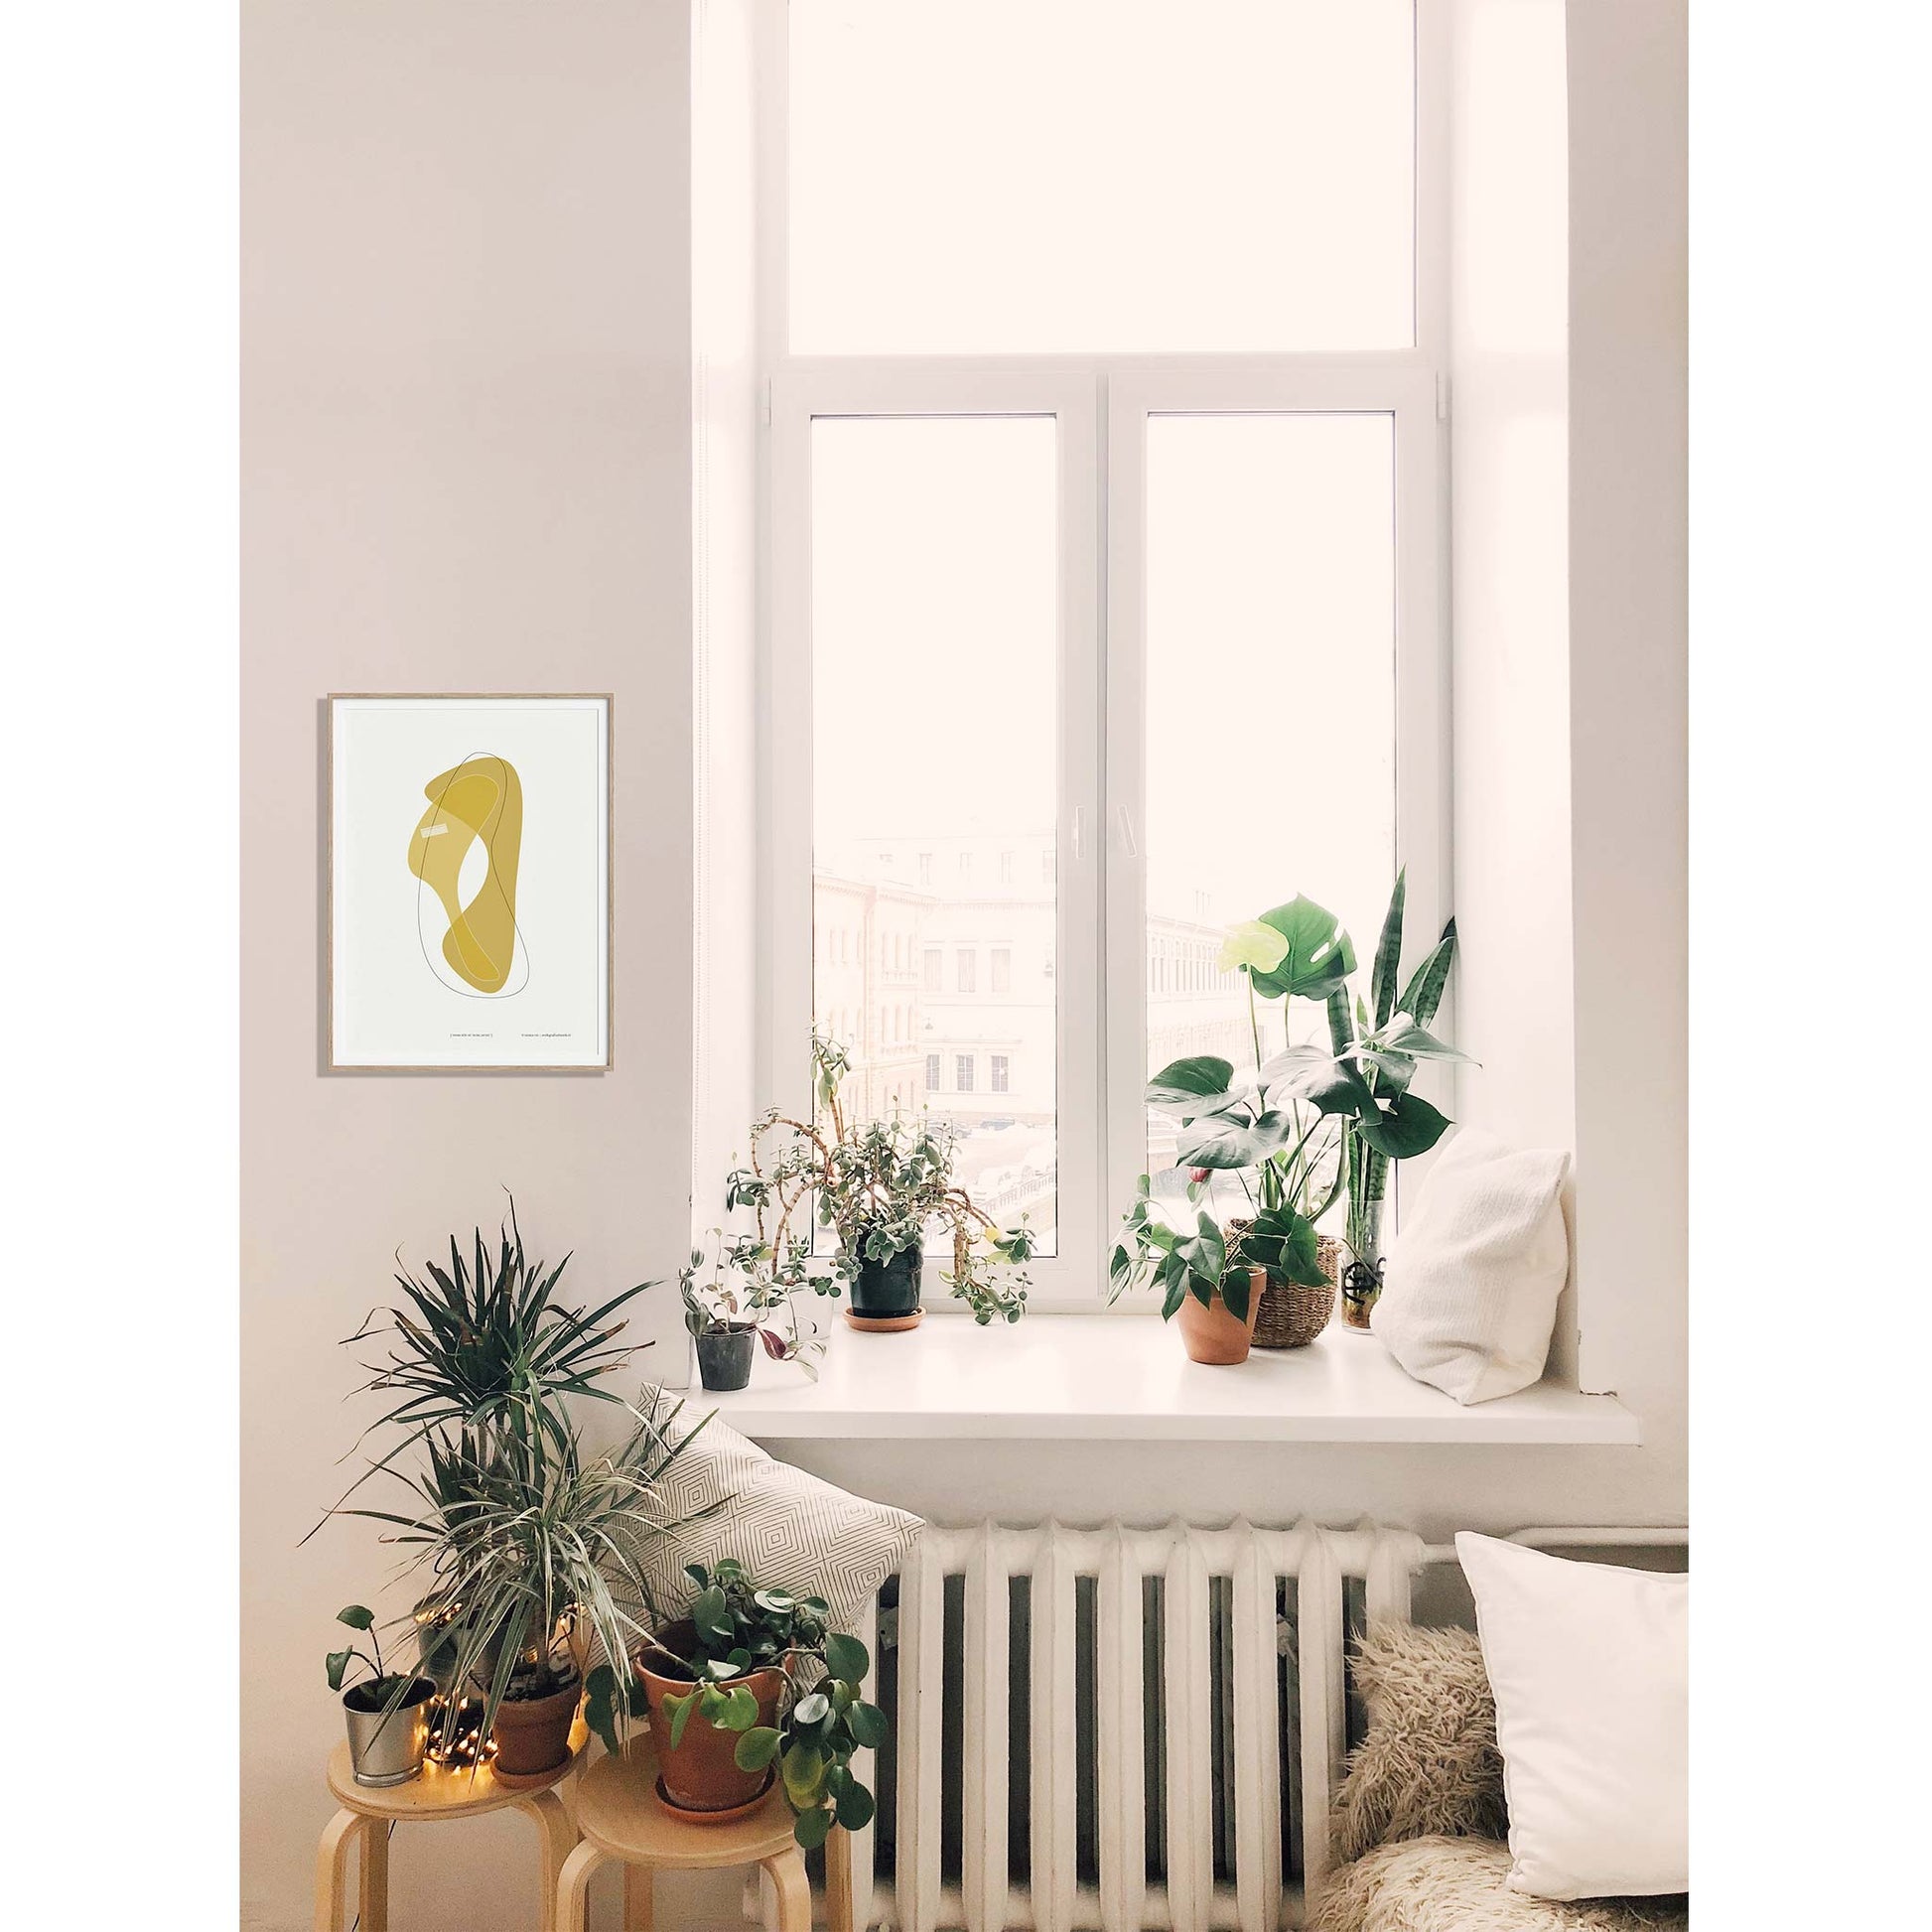 Productafbeelding poster "vorm één in ocre jaune" 2de impressie ingelijst hangend in een interieur naast een raam